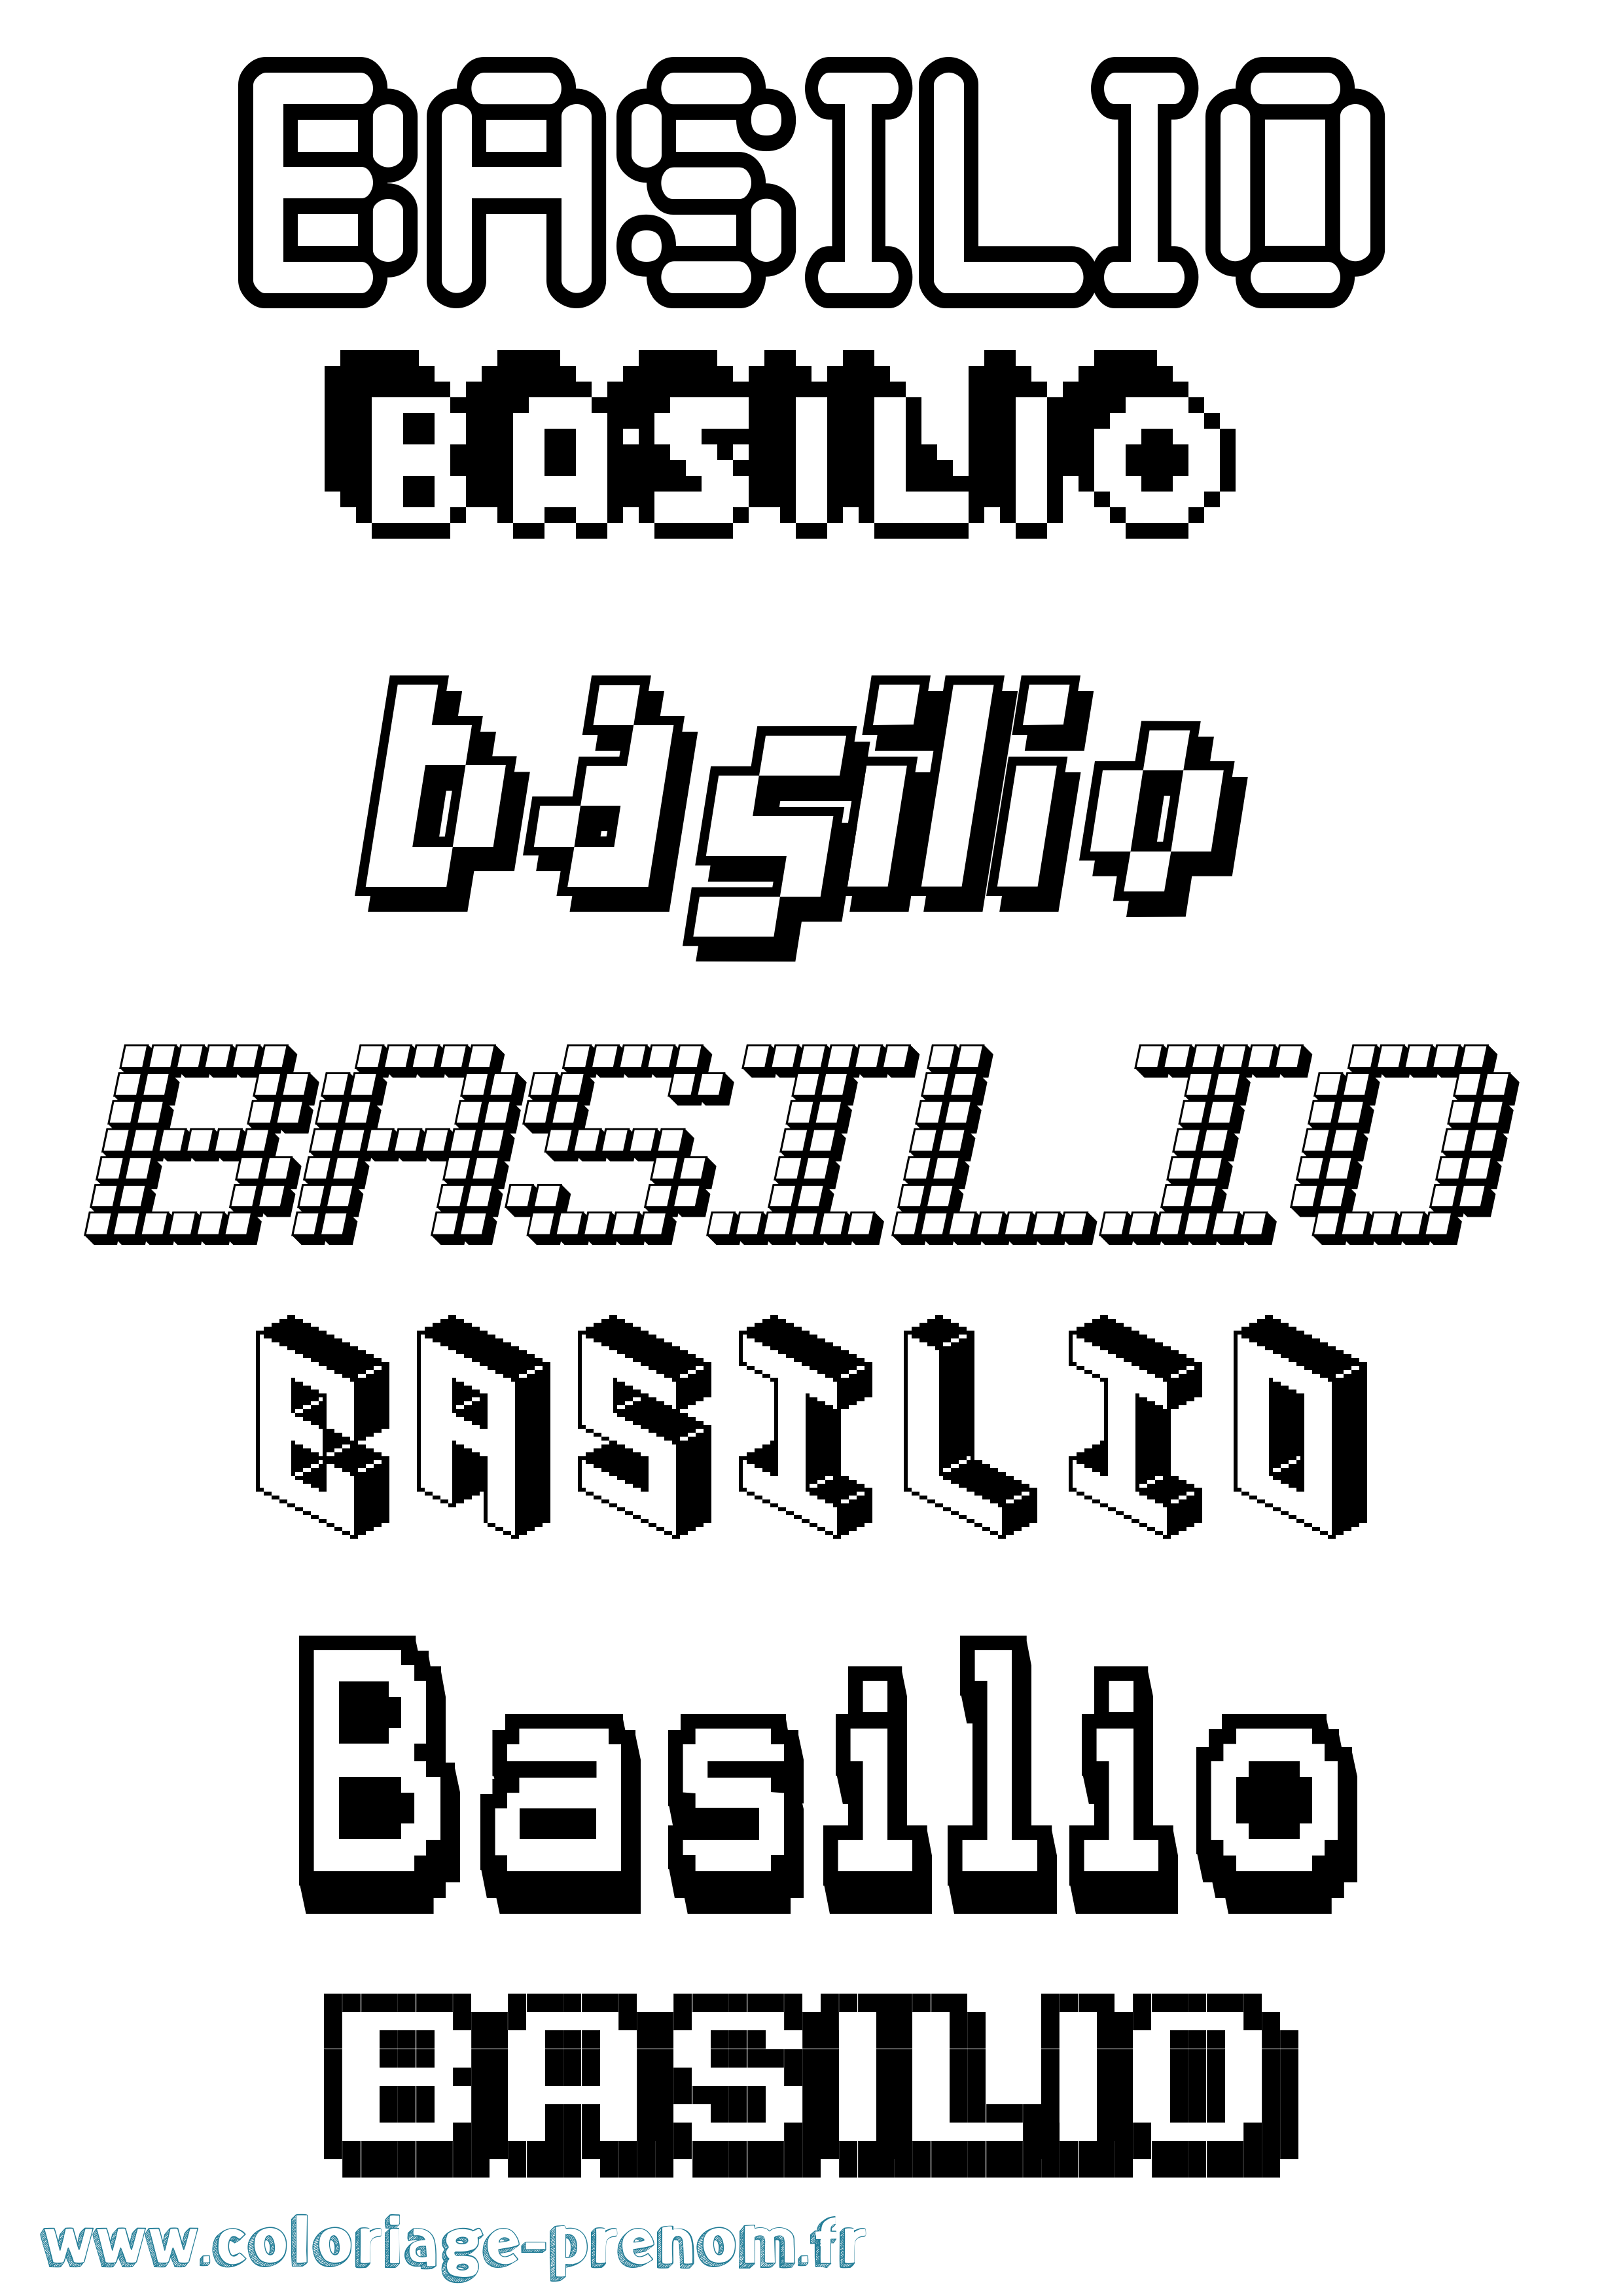 Coloriage prénom Basilio Pixel